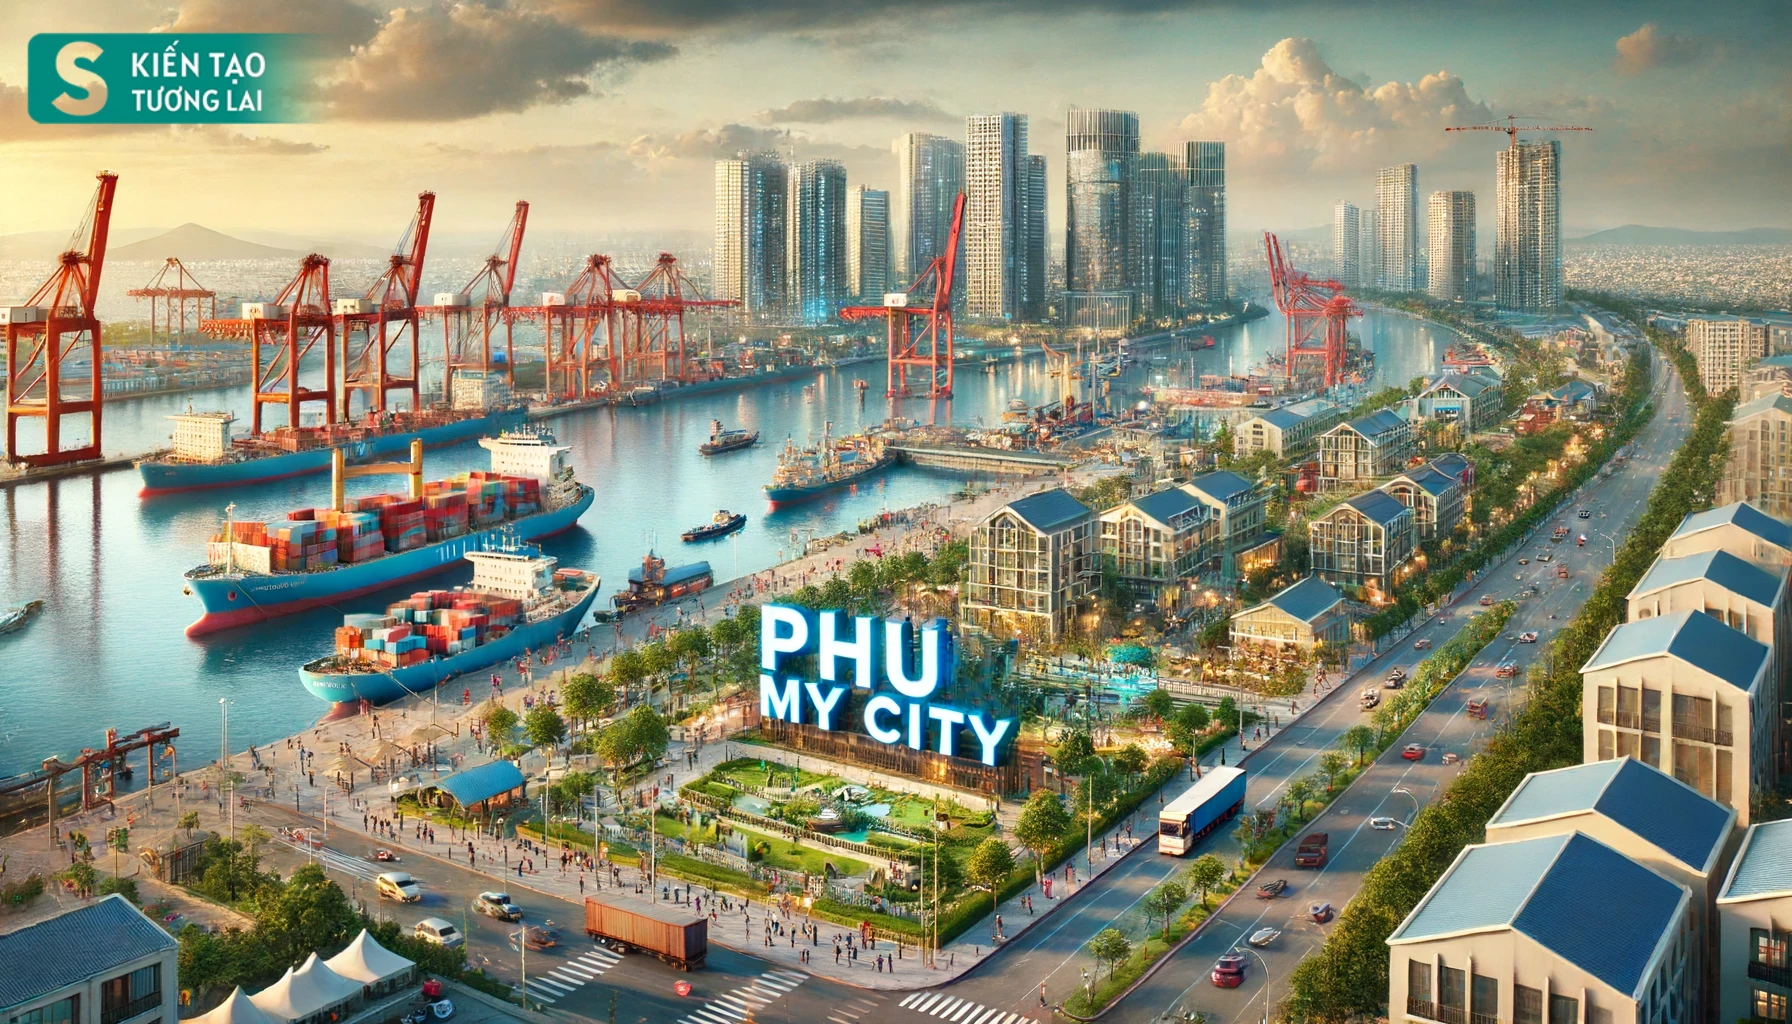 Hoàn thành Đề án thành phố Phú Mỹ - kỳ vọng trở thành thành phố cảng biển quan trọng vùng Đông Nam Bộ